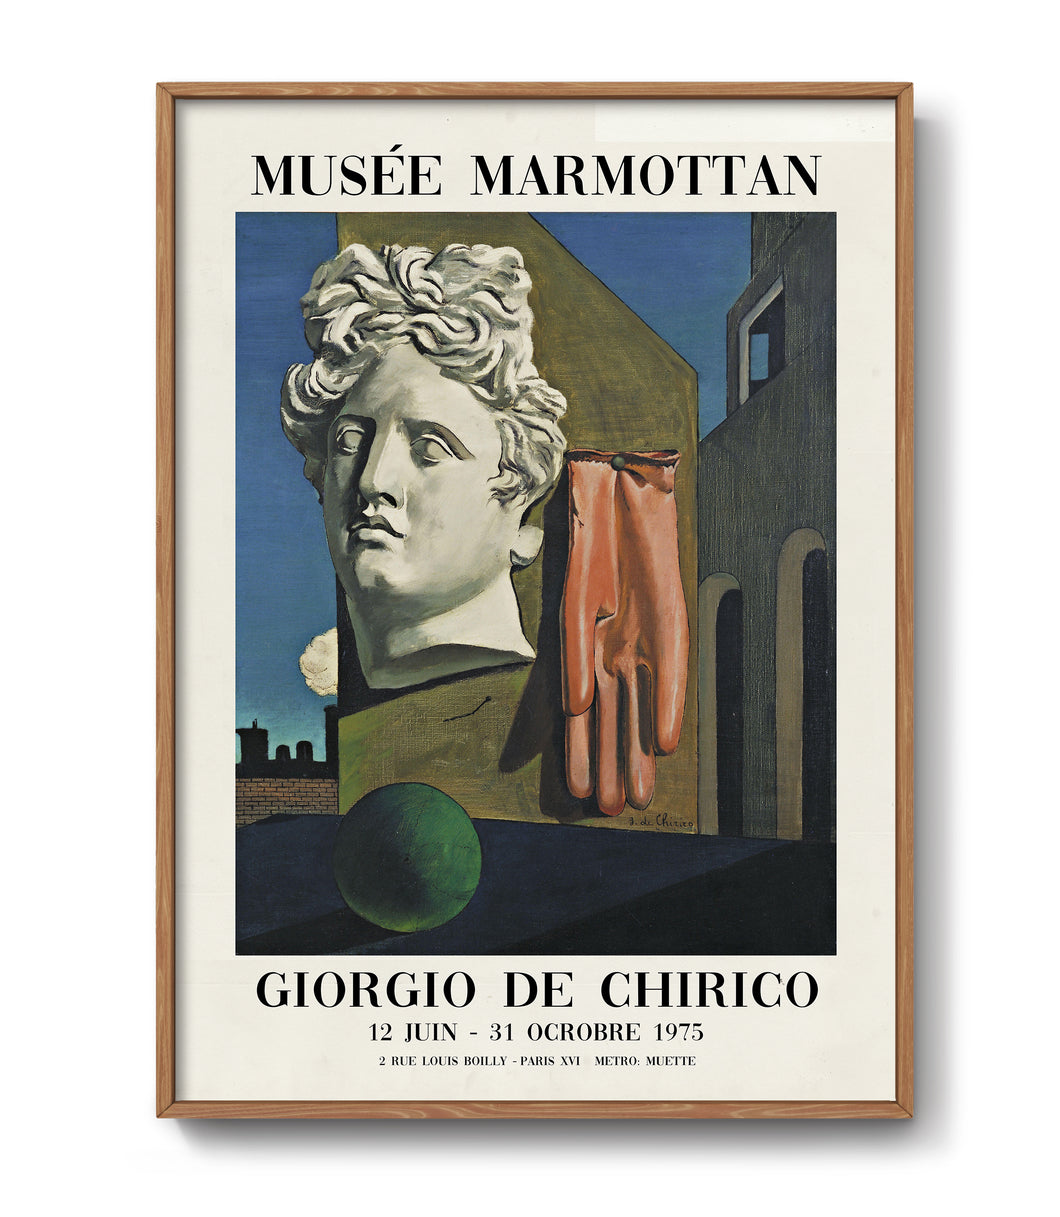 Exhibition Poster by Giorgio de Chirico